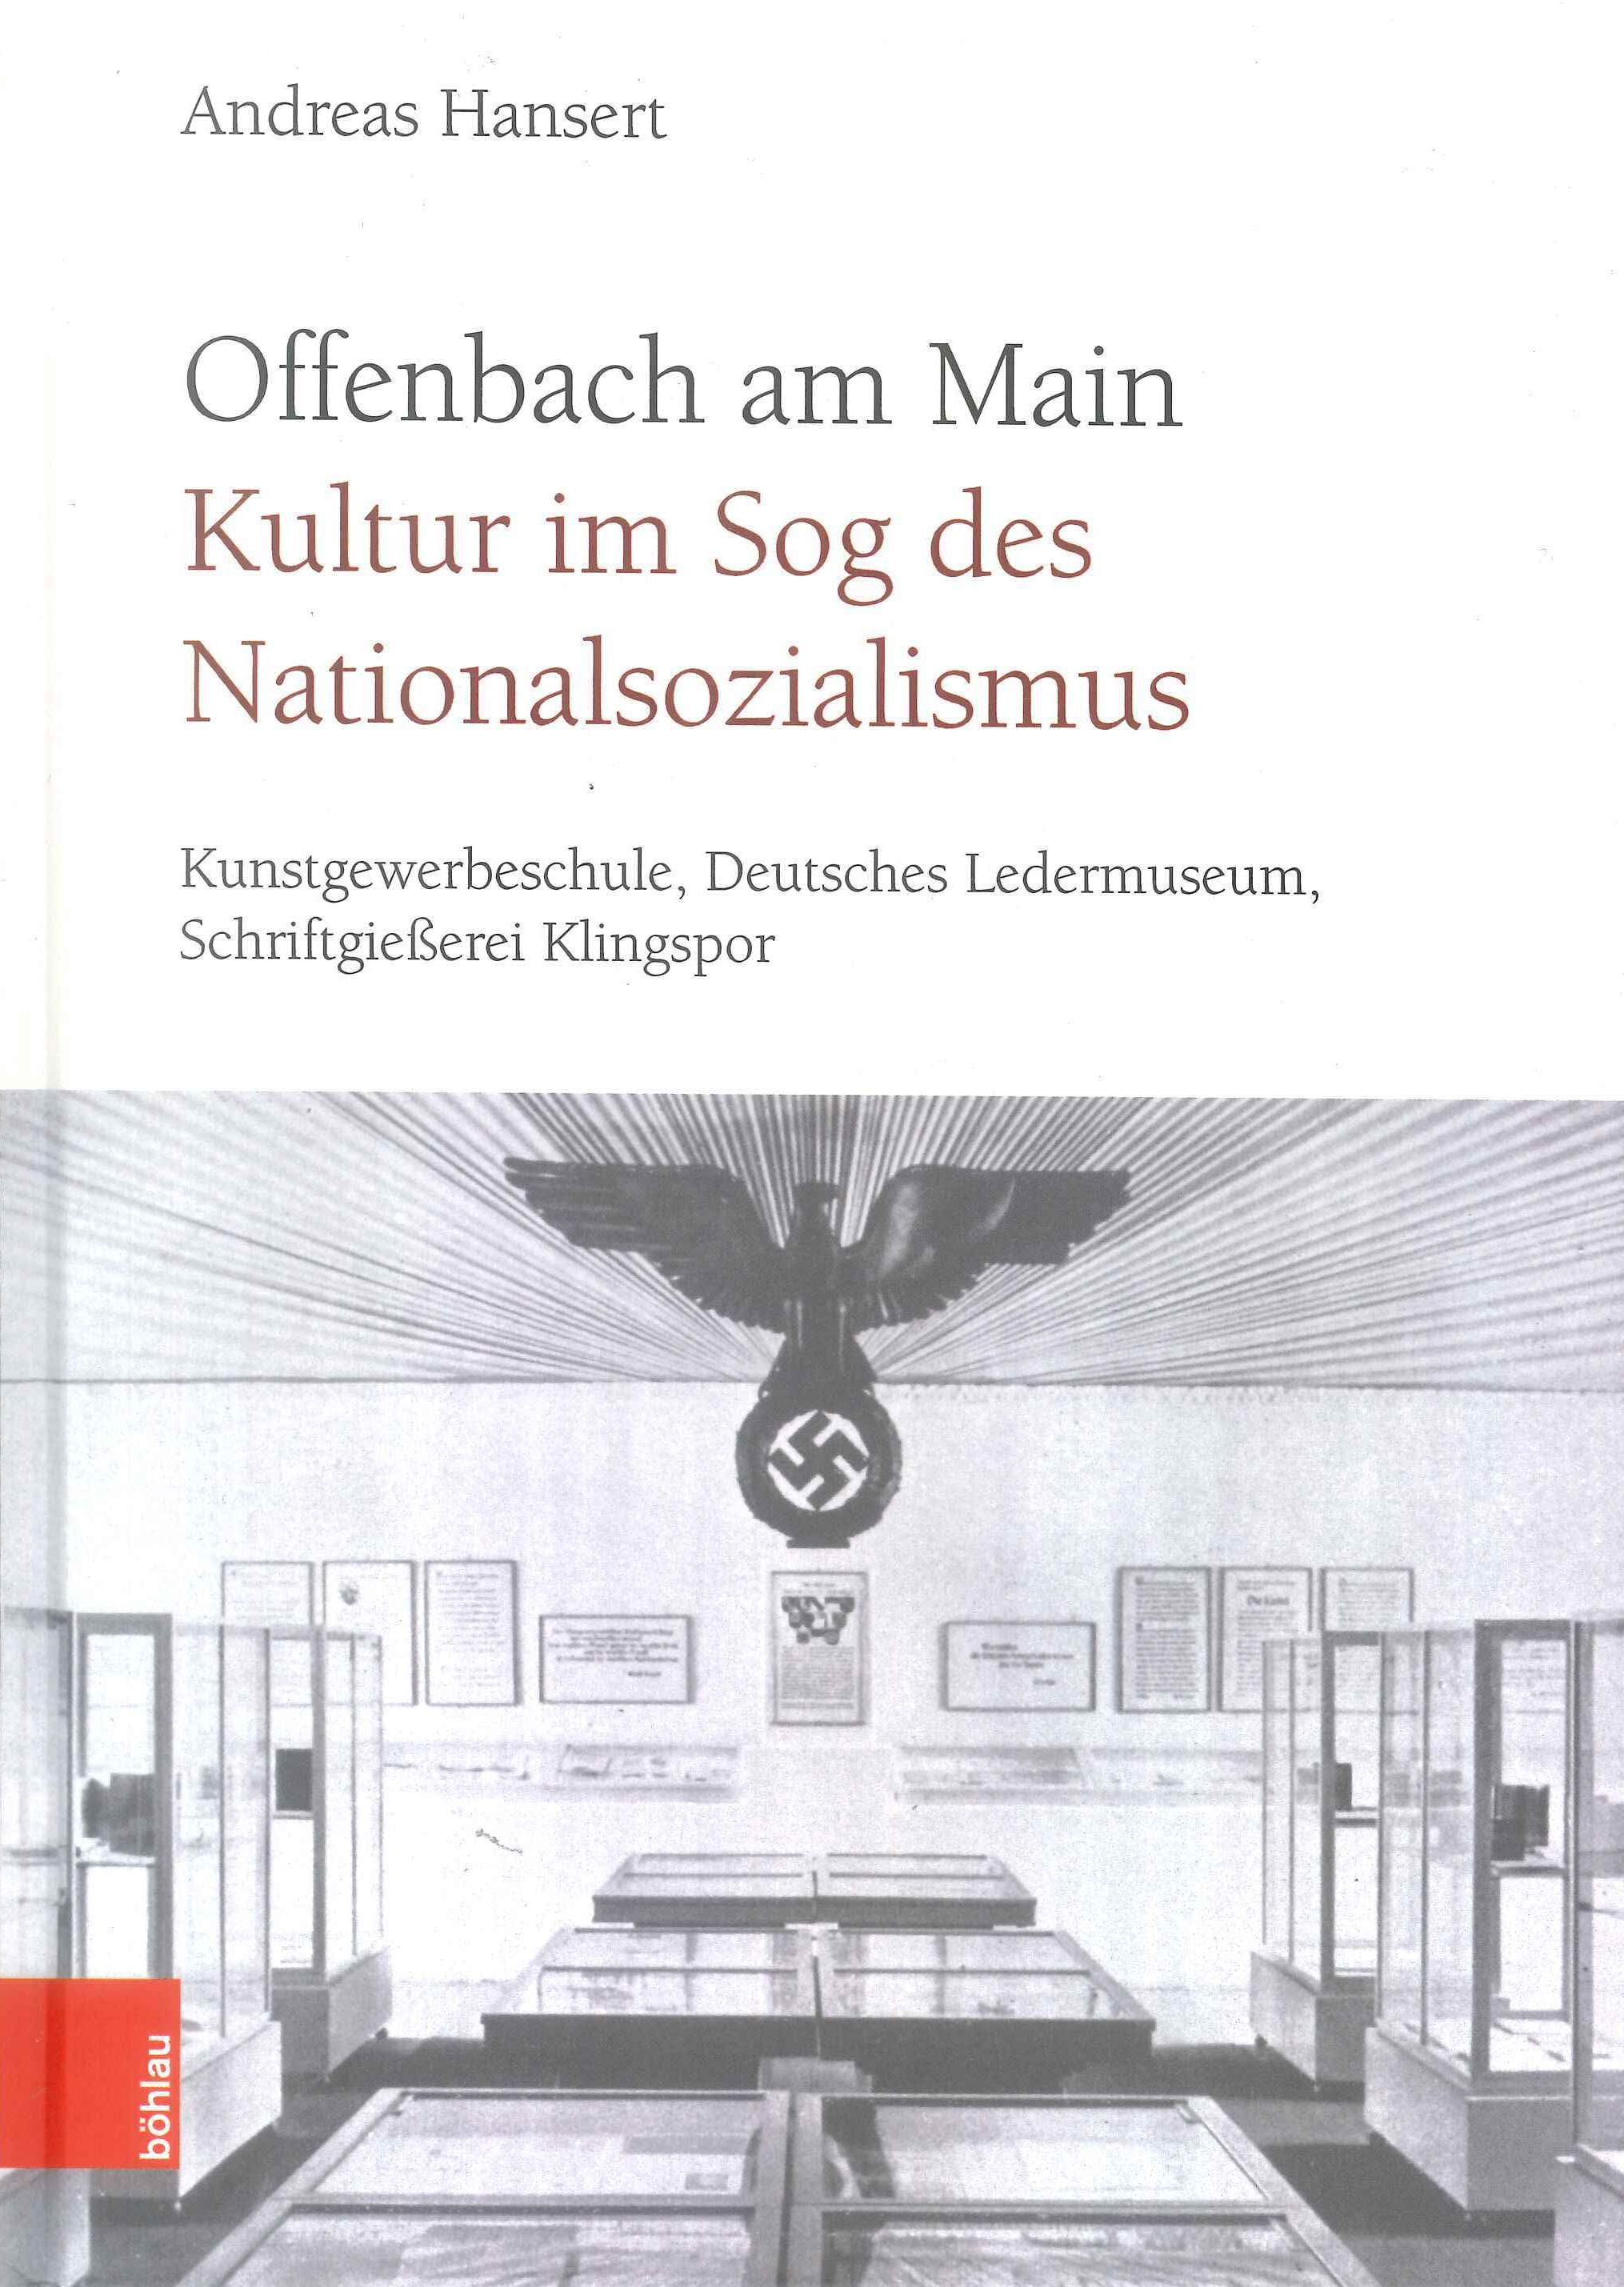 Das Buch geht darauf ein wie verschiedene Kultureinrichtungen in Offenbach während des Nationalsozialismus agierten.